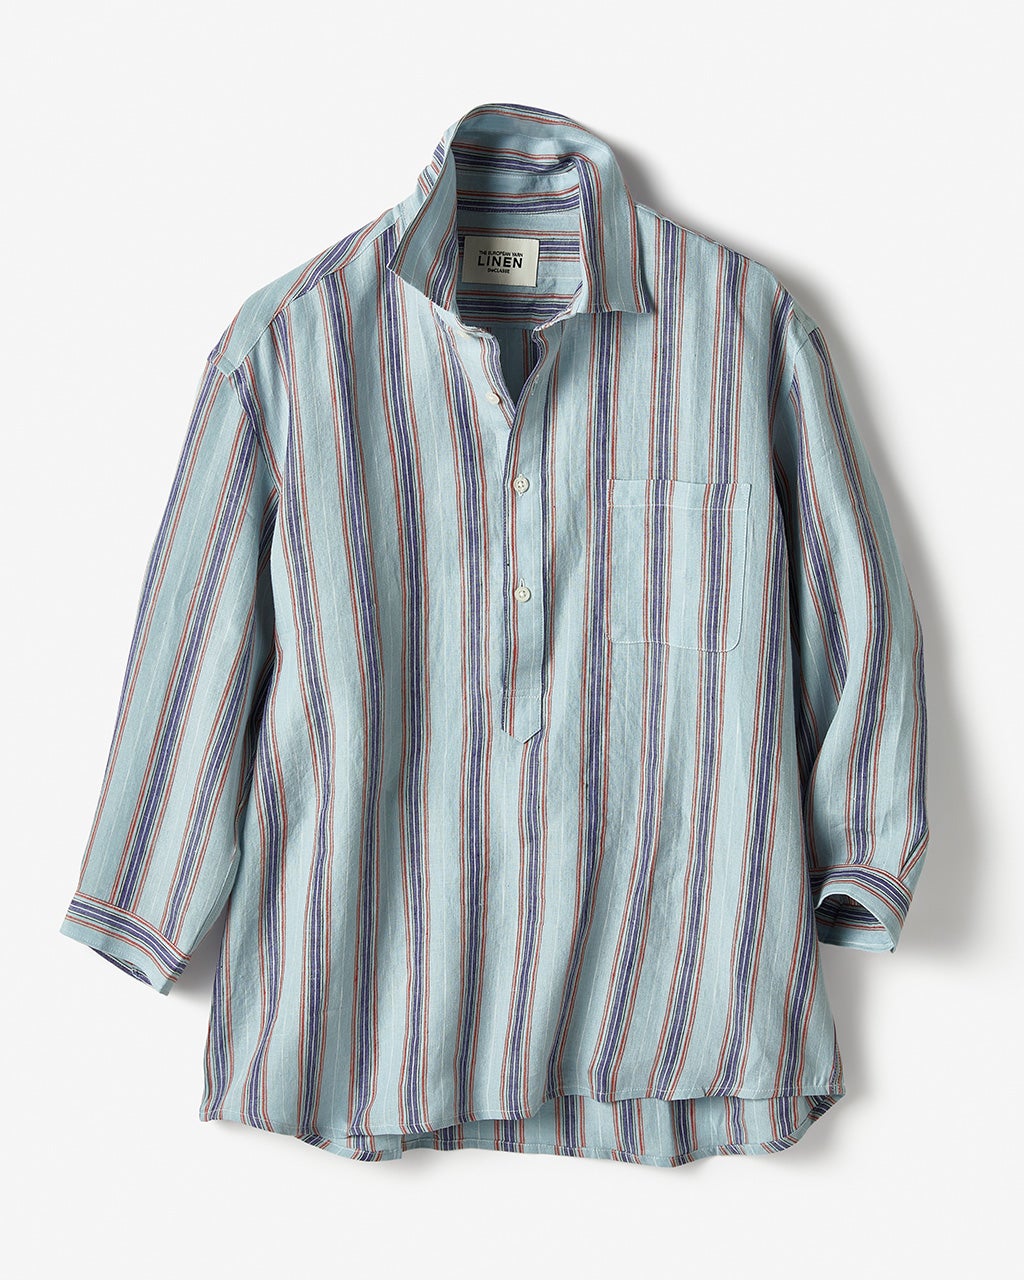 リネンプルオーバーシャツ/40代50代からのメンズファッション通販 DoCLASSE